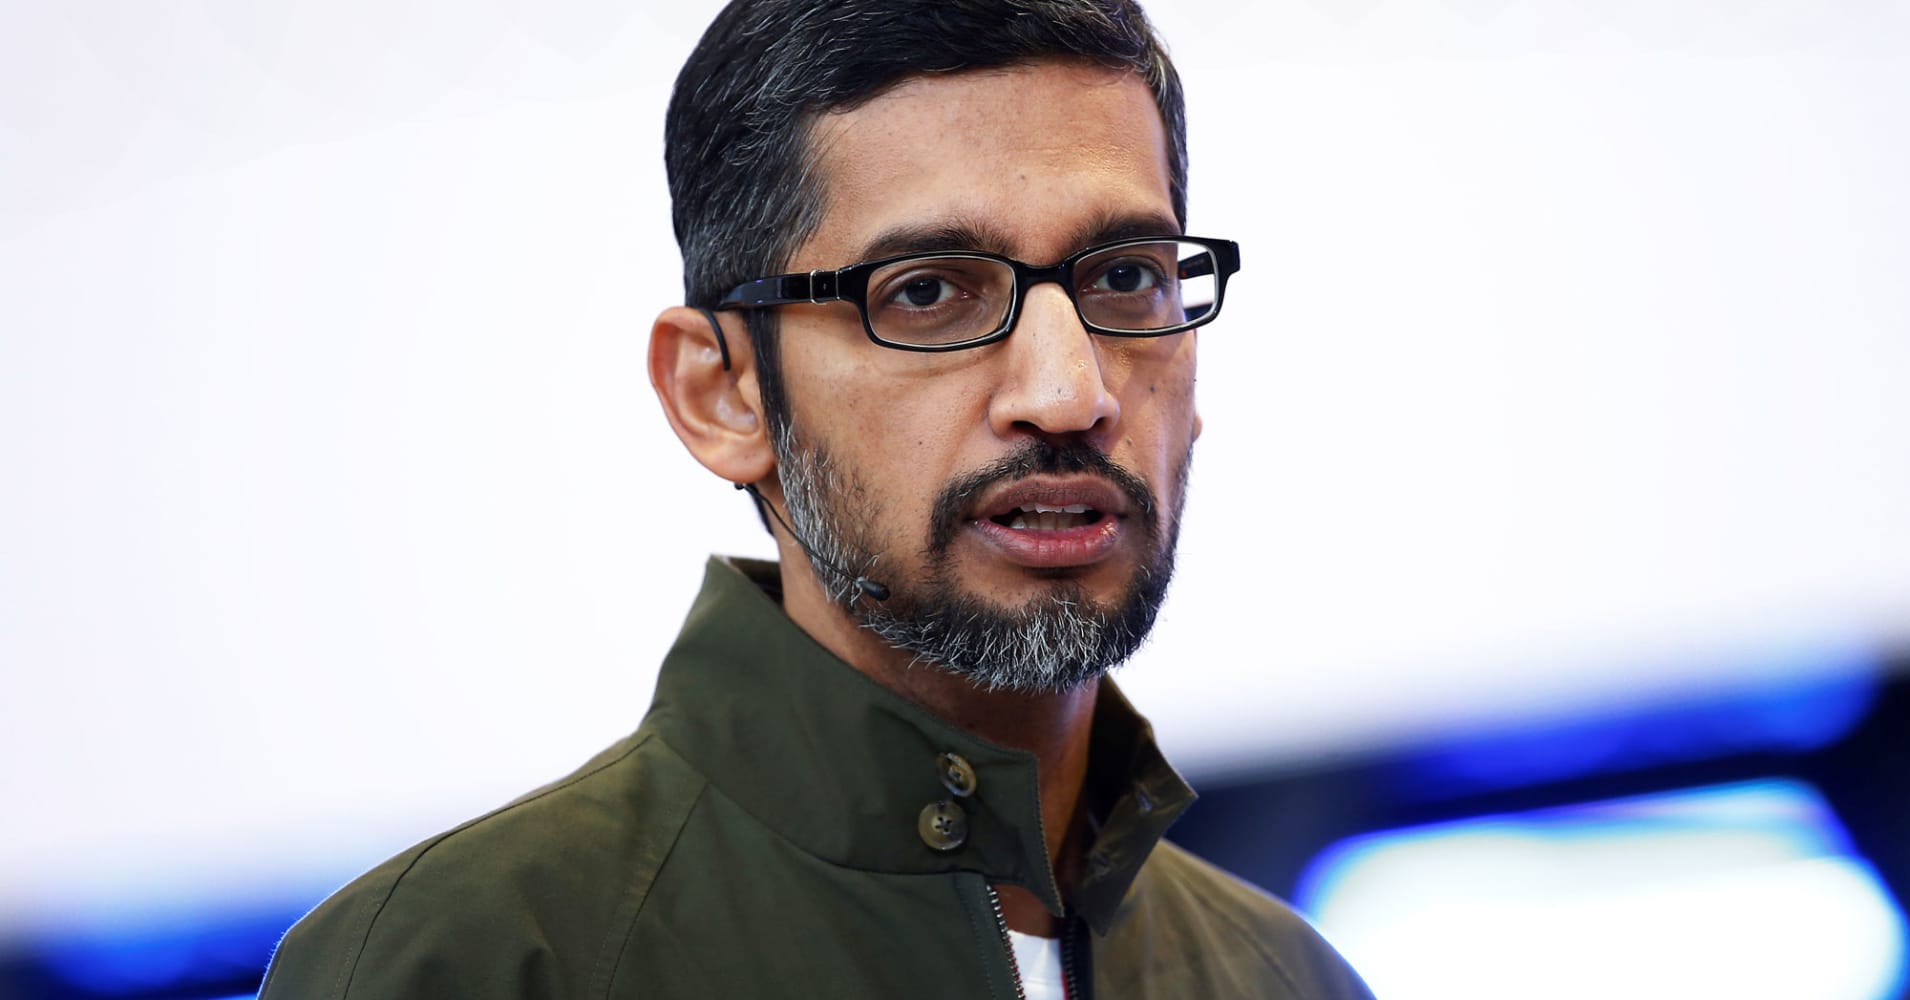 Google CEO Sundar Pichai will face Congress next week